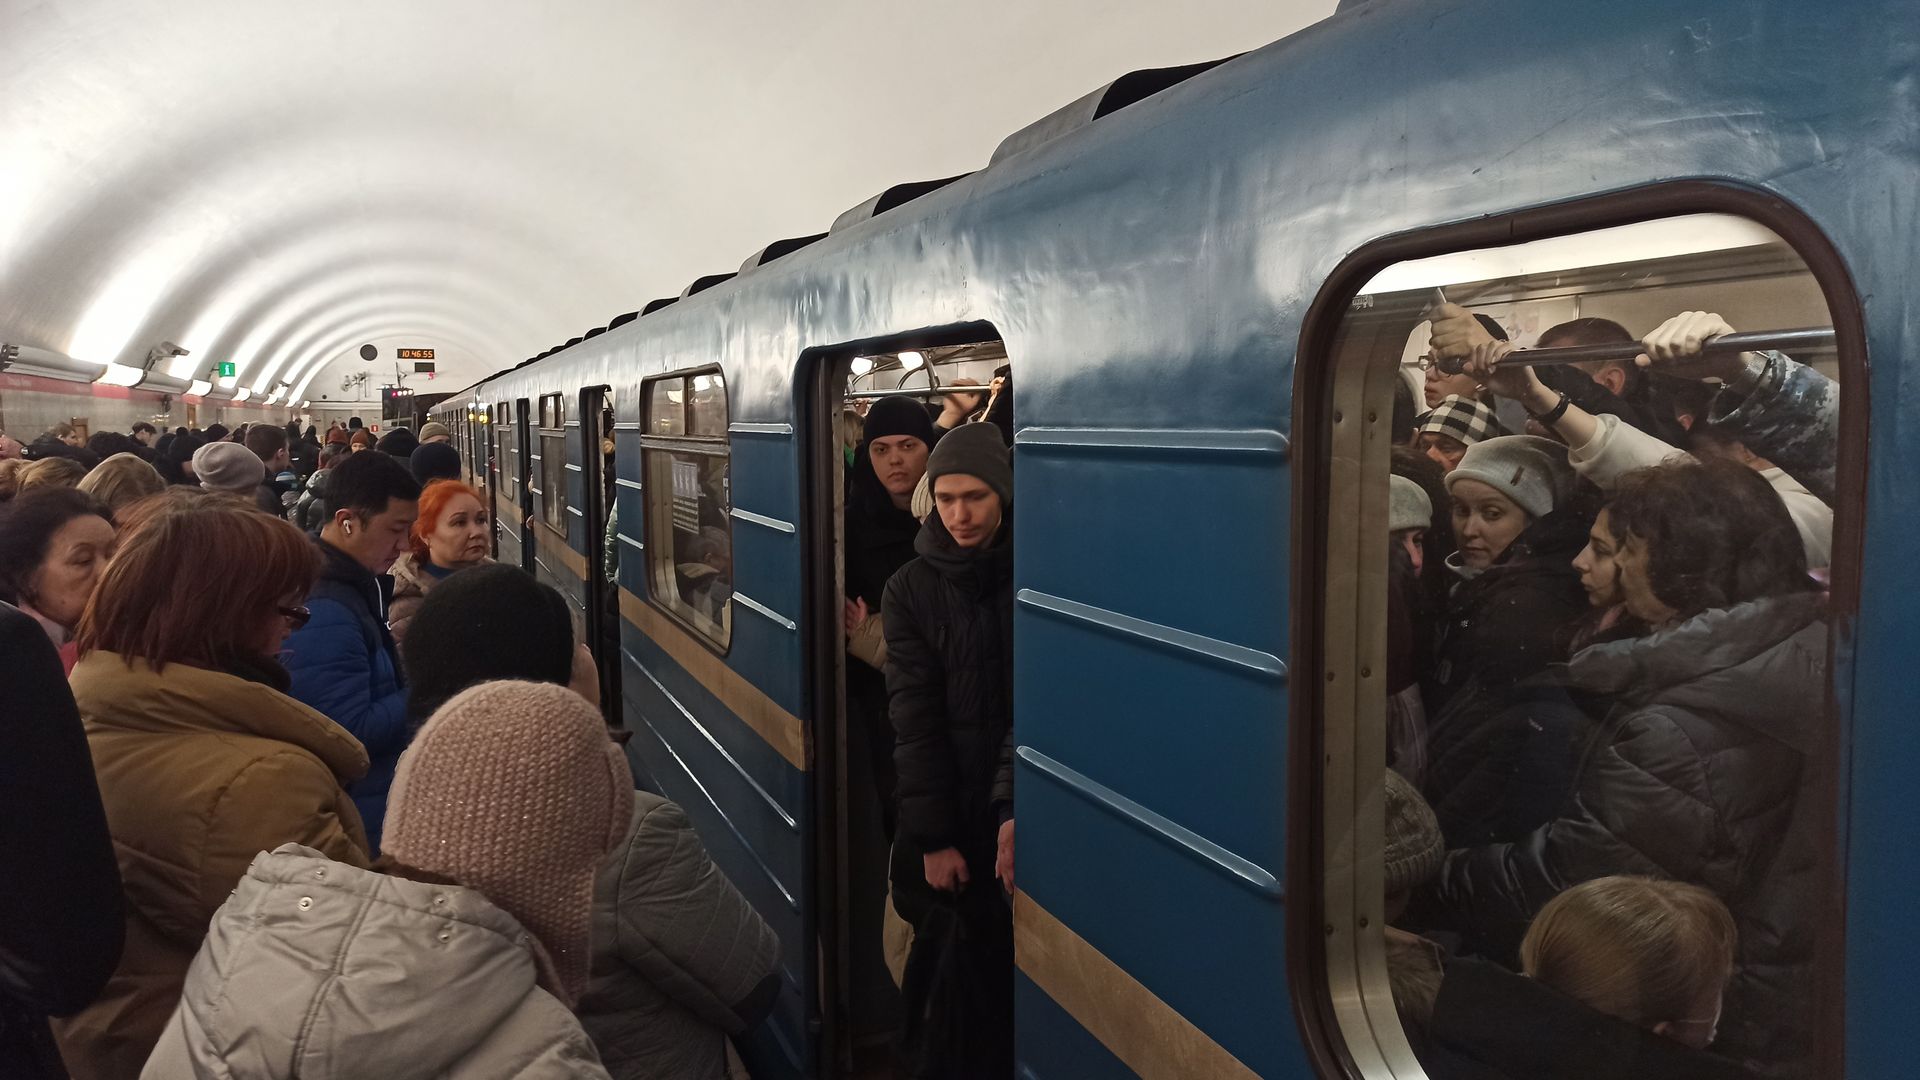 Питер метро что произошло сегодня. Поезд метро. Люди в метро. Питерское метро. Поезда метро Петербурга.